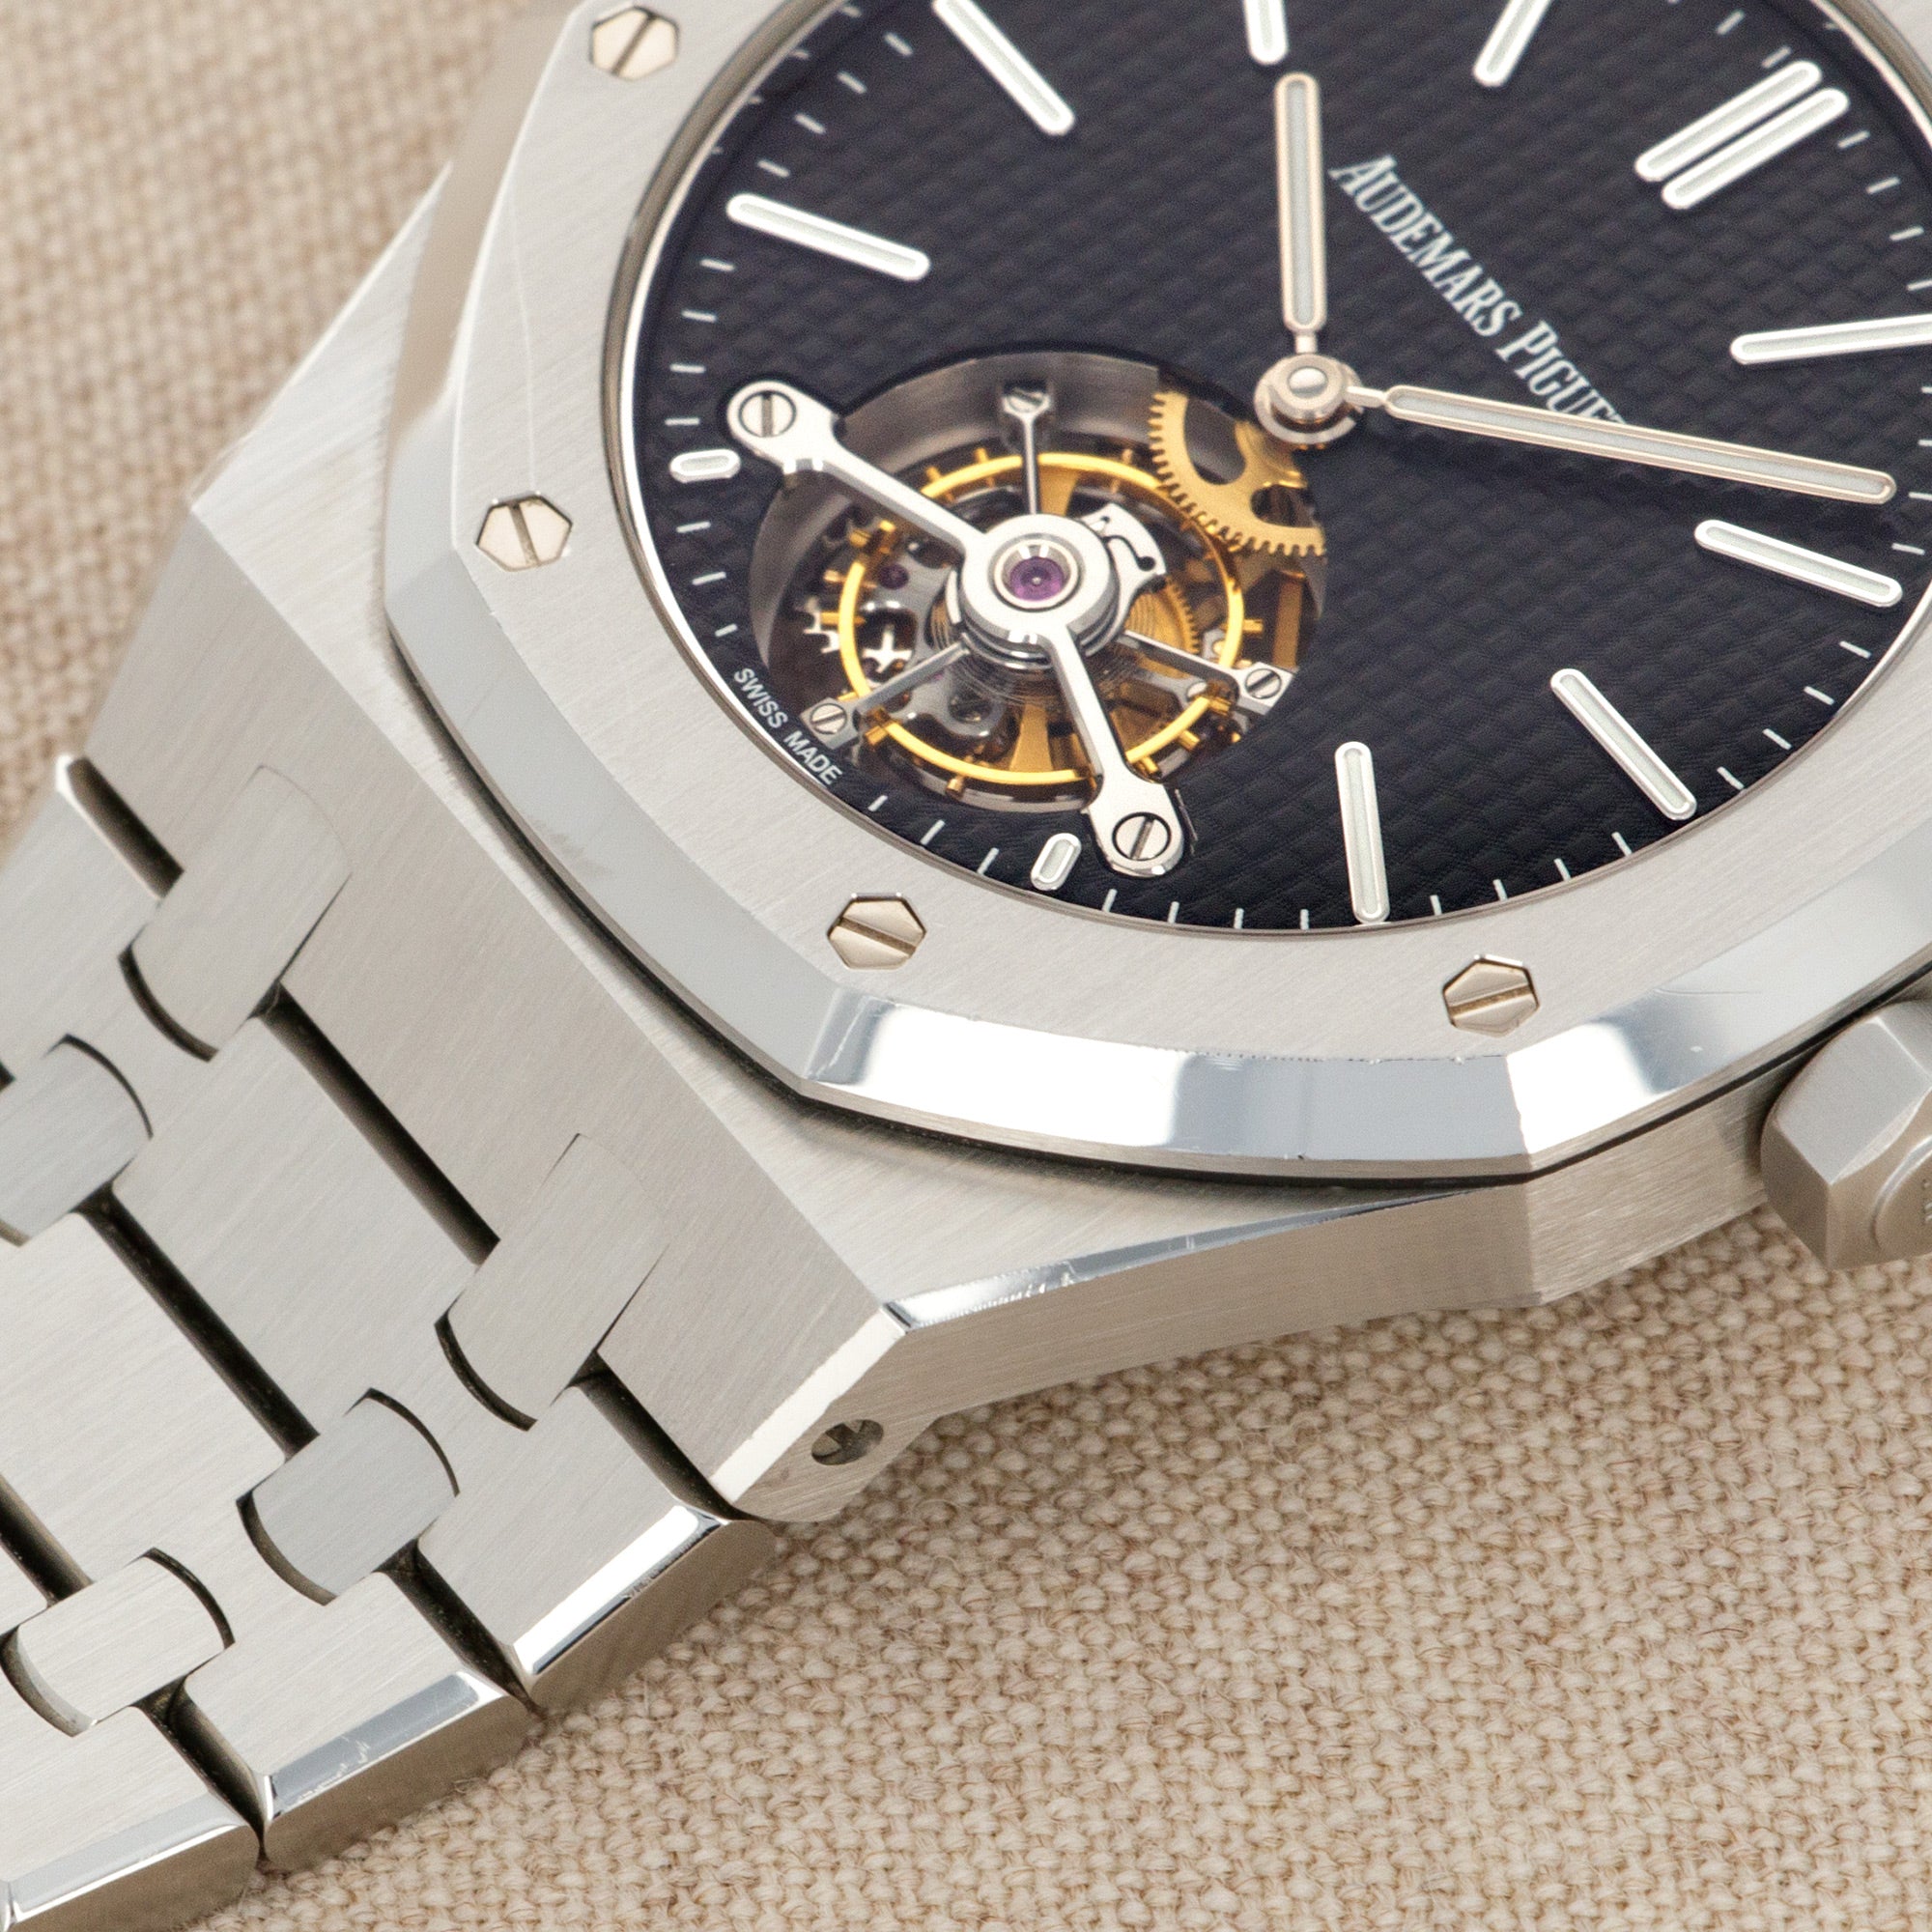 Audemars Piguet - Audemars Piguet Royal Oak Tourbillon Japan Edition Watch Ref. 26512 - The Keystone Watches